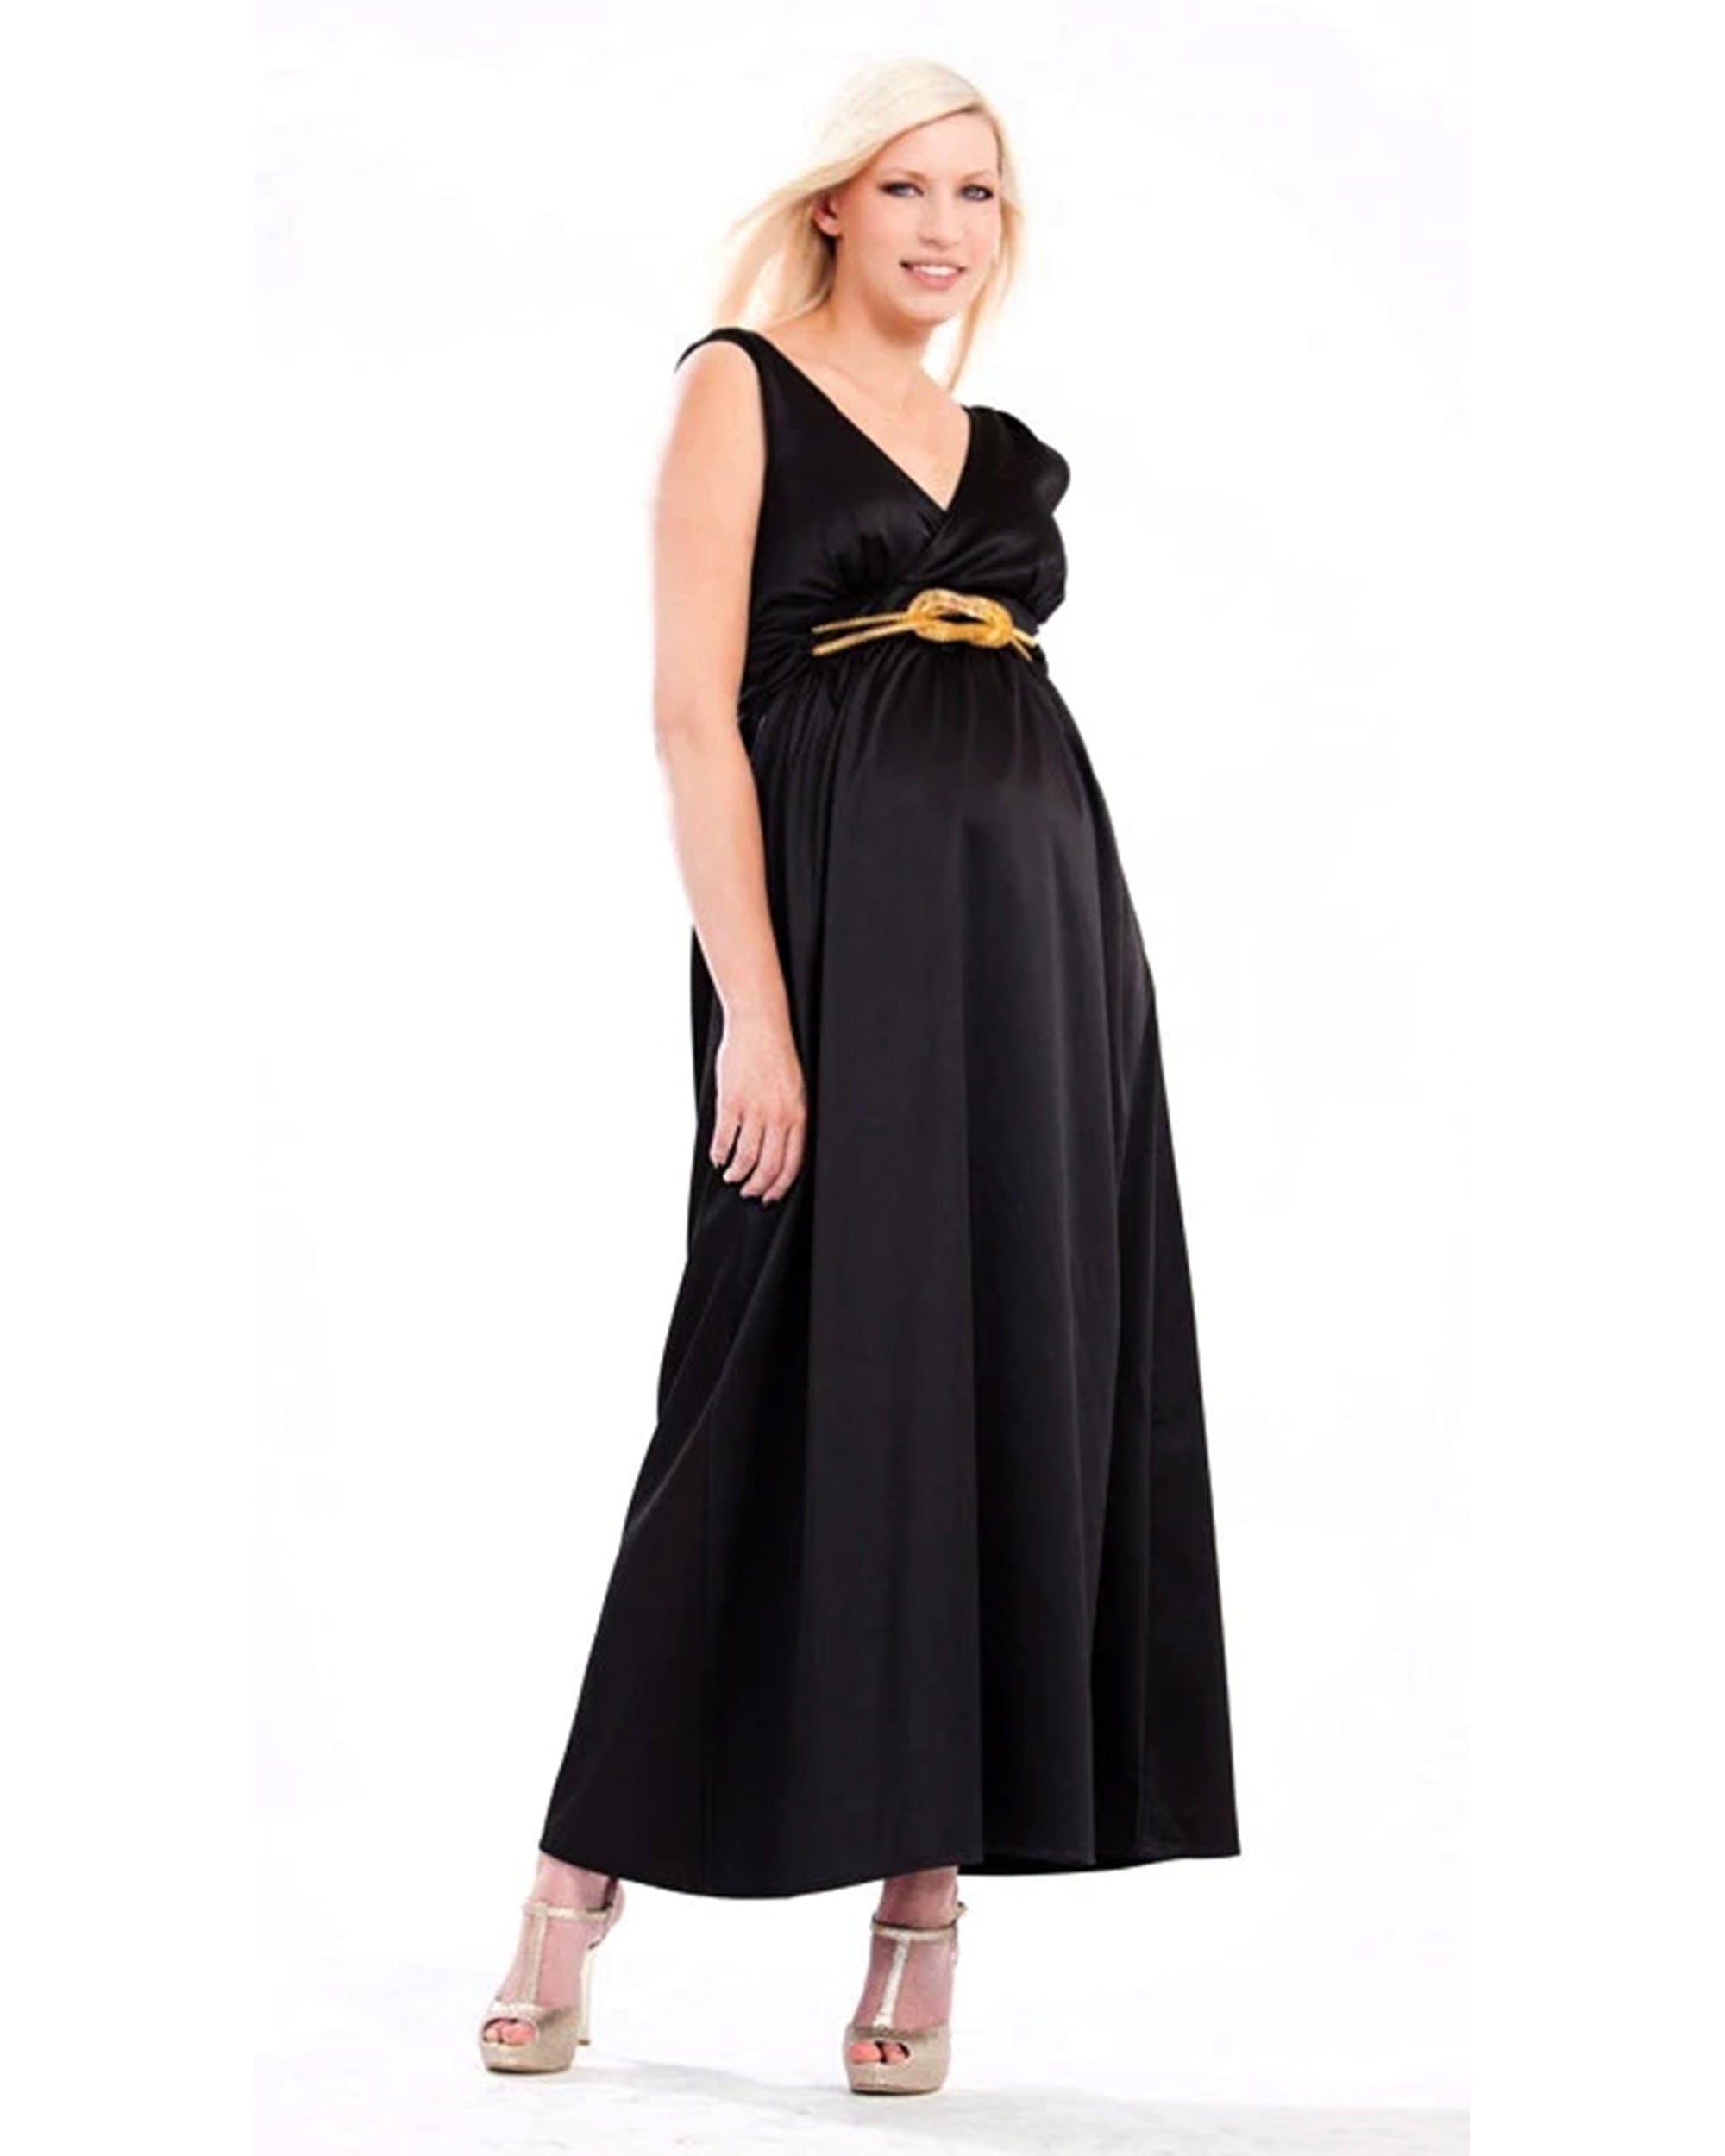 Charlotte Devereux 'Goddess' Maternity Formal Dress - Black